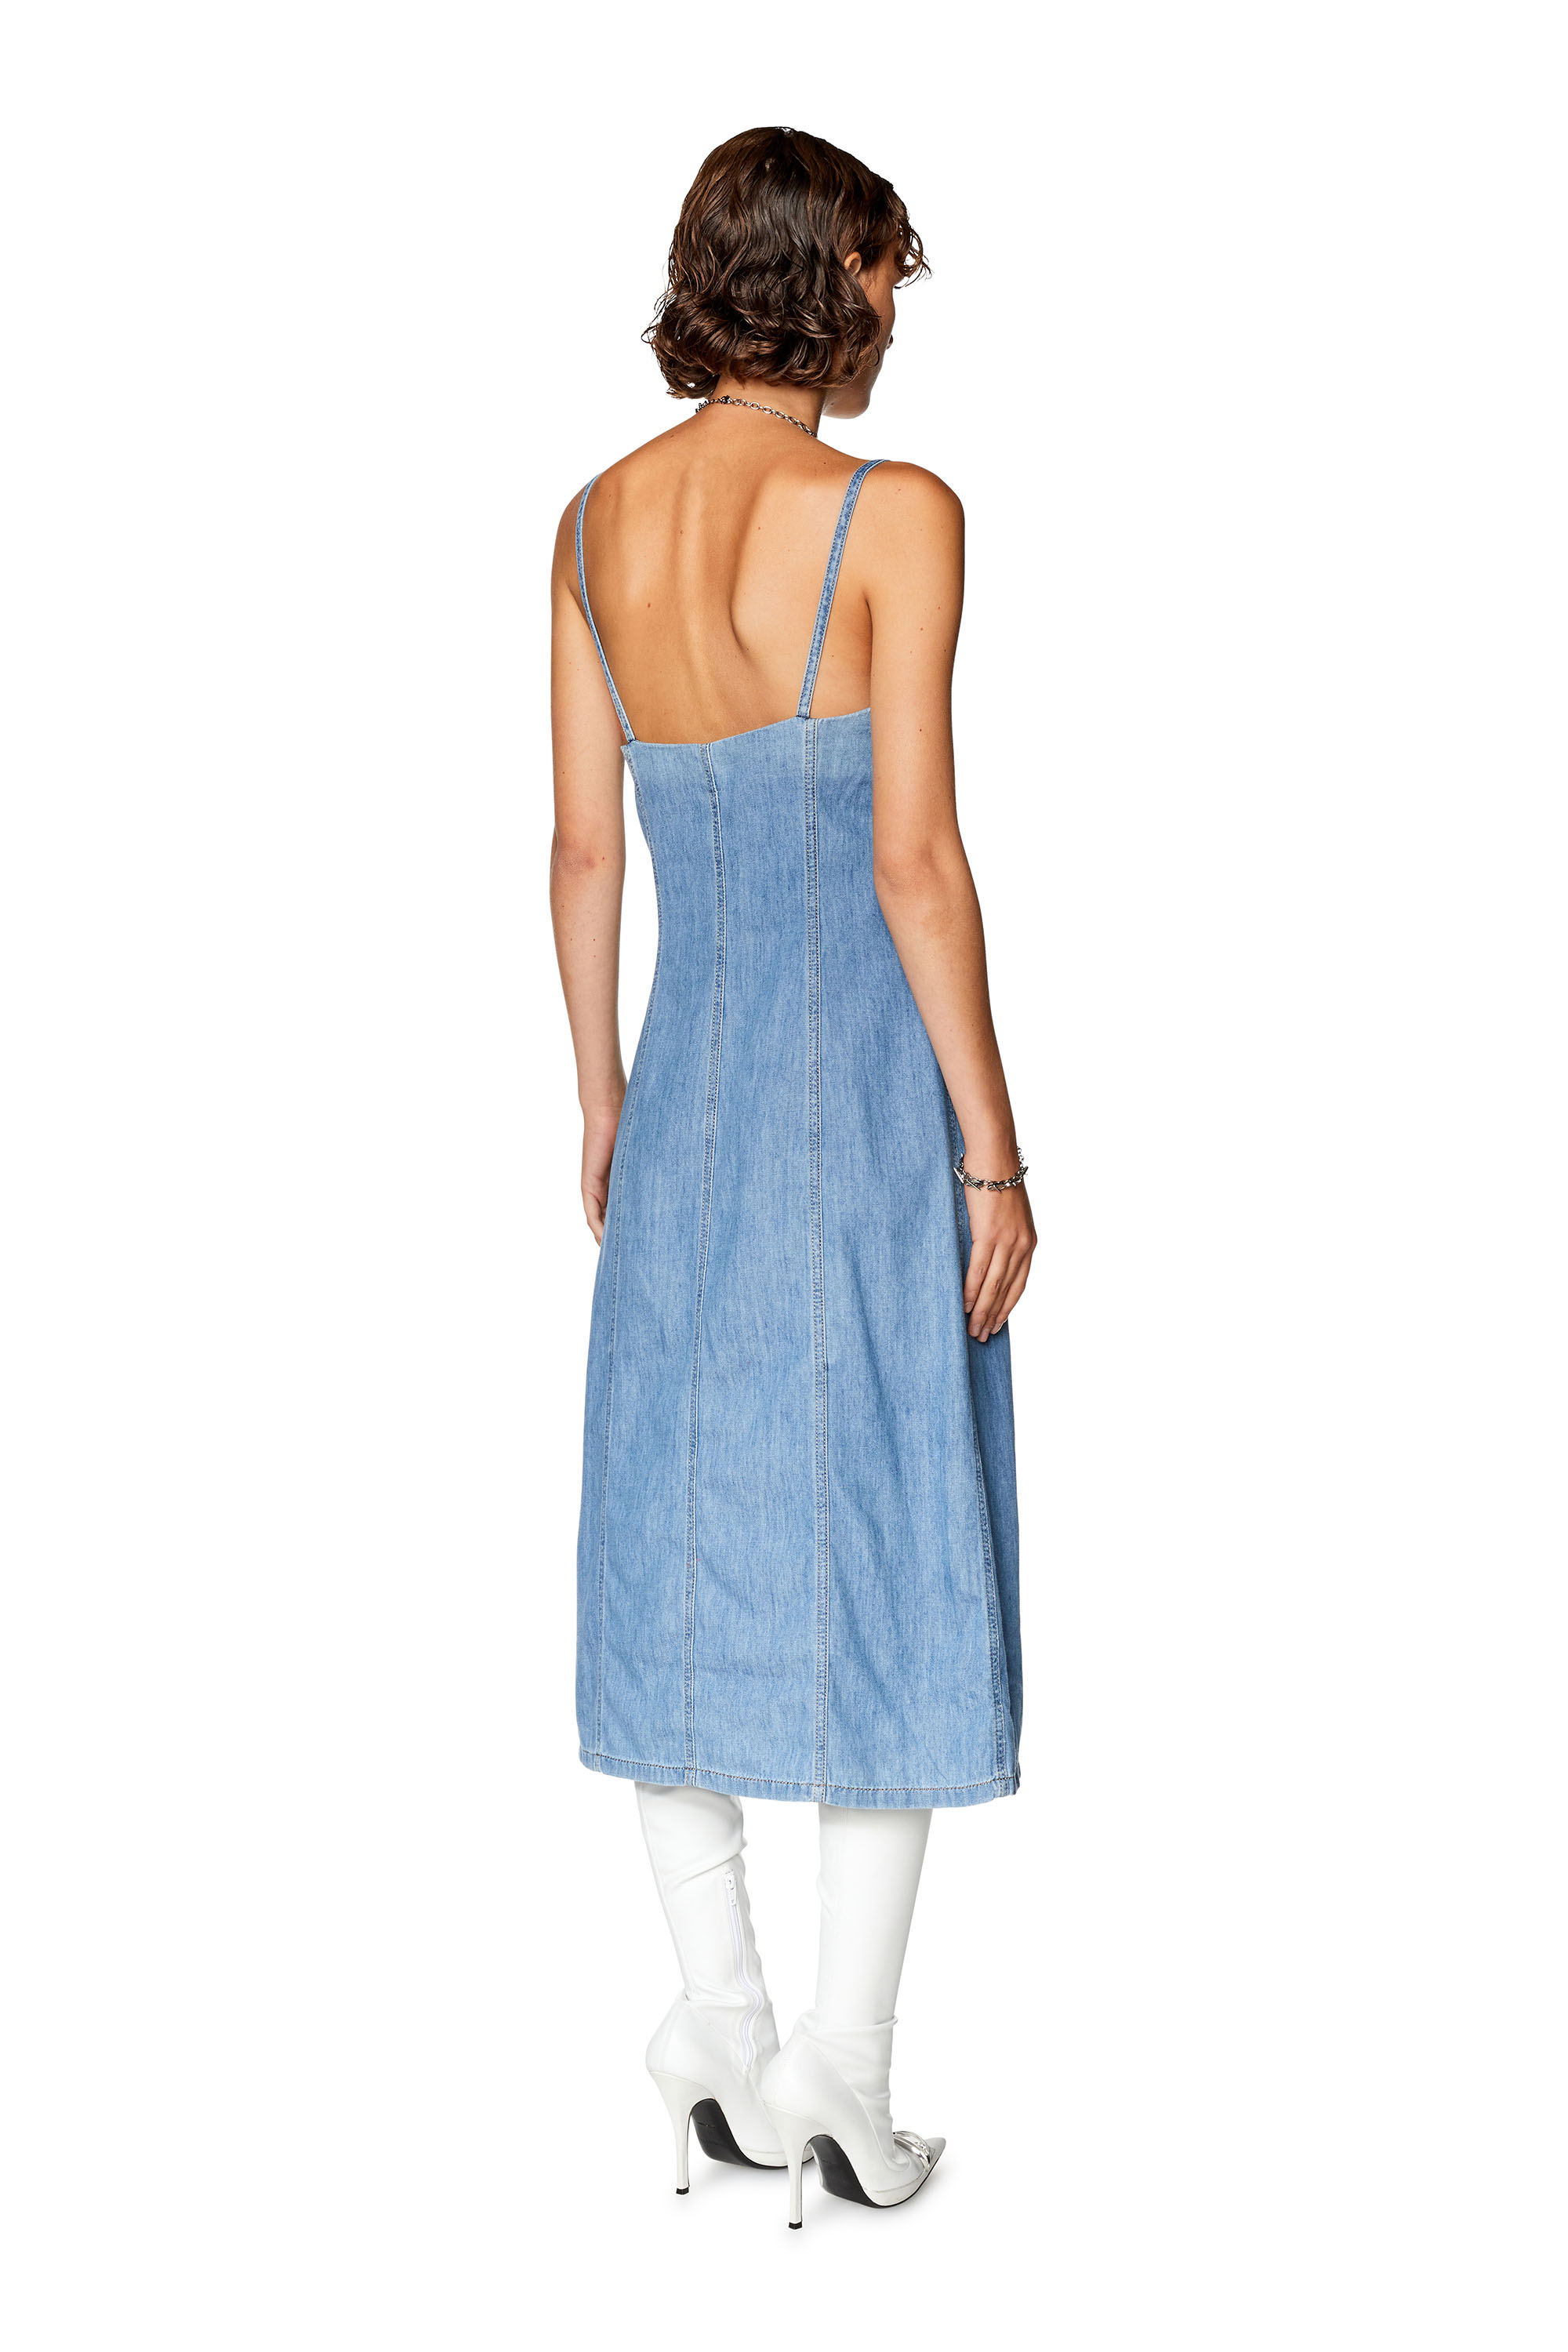 Diesel - DE-DRESSY, Woman Strappy midi dress in fix denim in Blue - Image 2